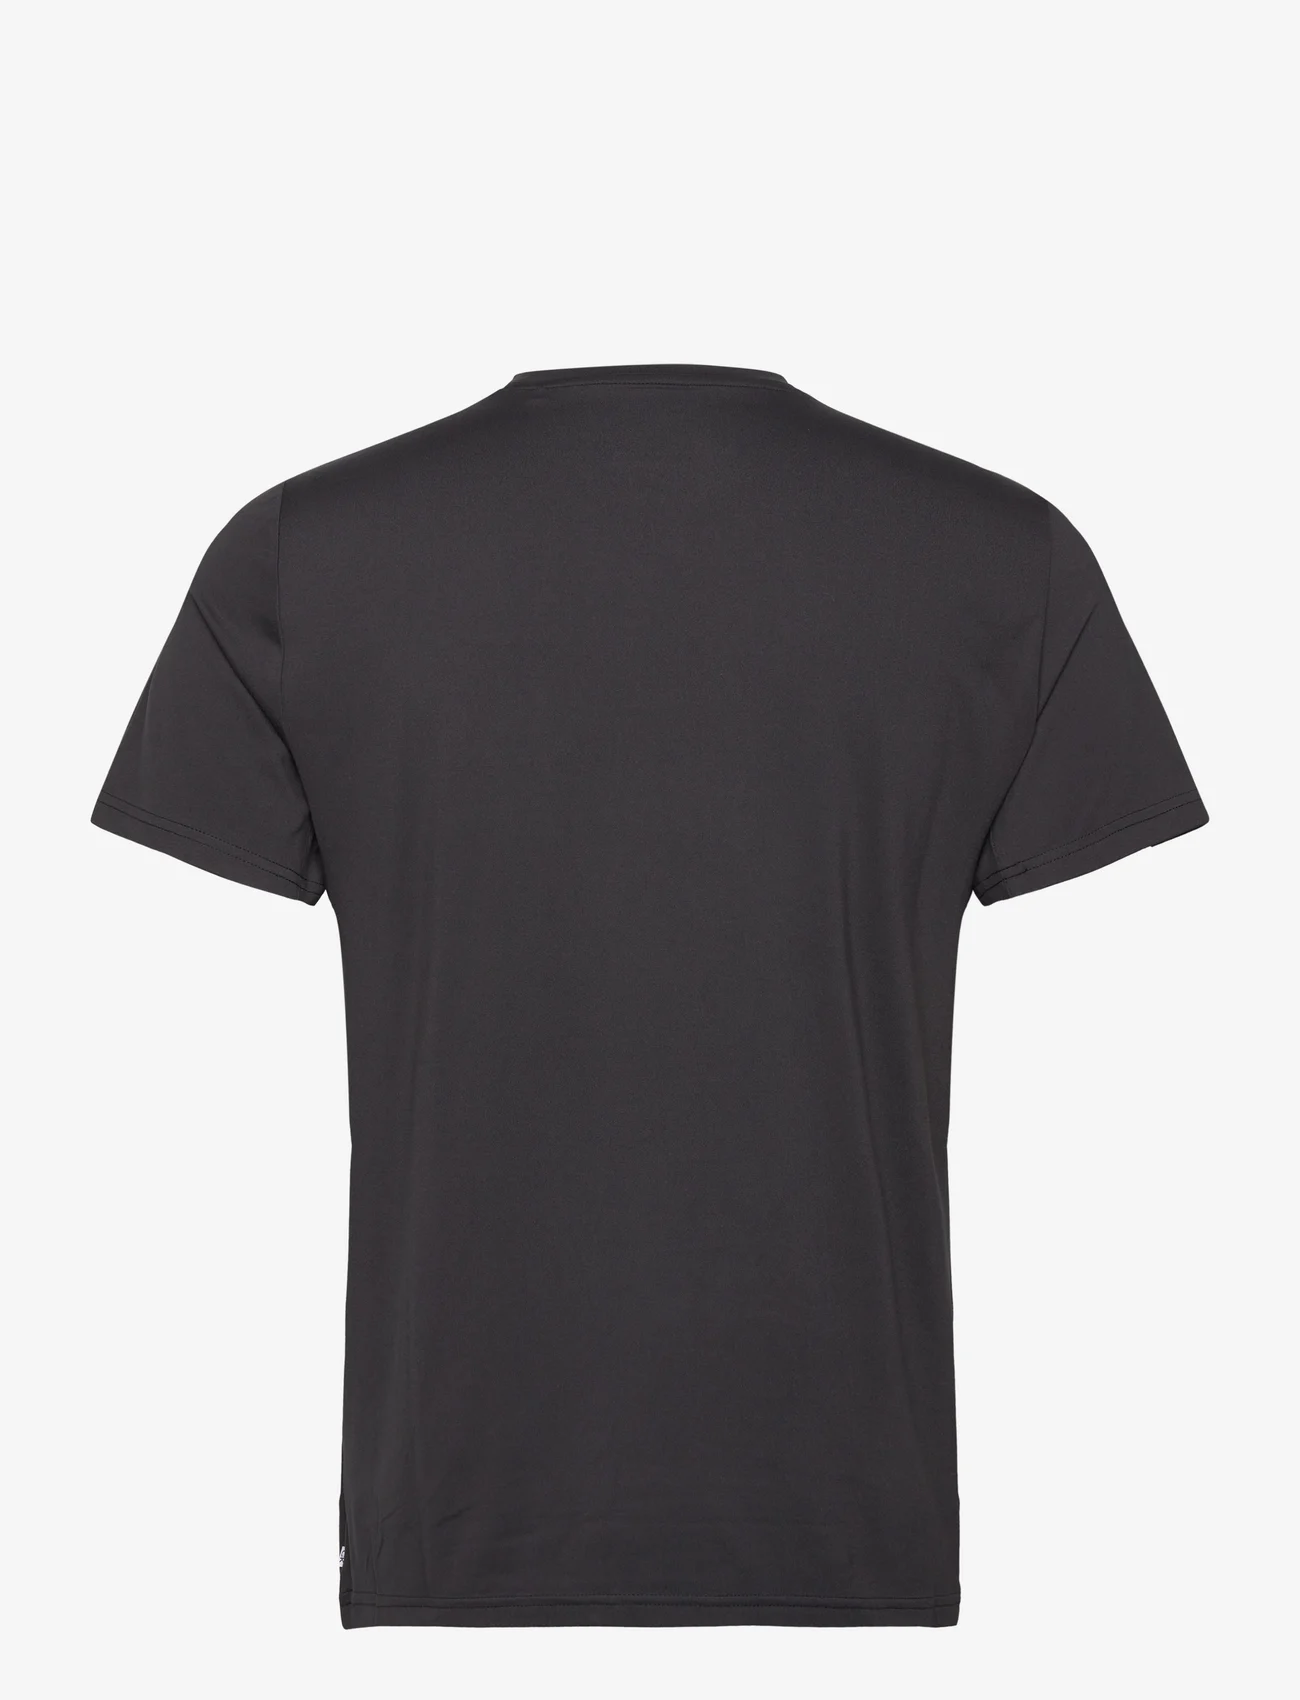 Calvin Klein Golf - NEWPORT T-SHIRT - tops & t-shirts - black - 1